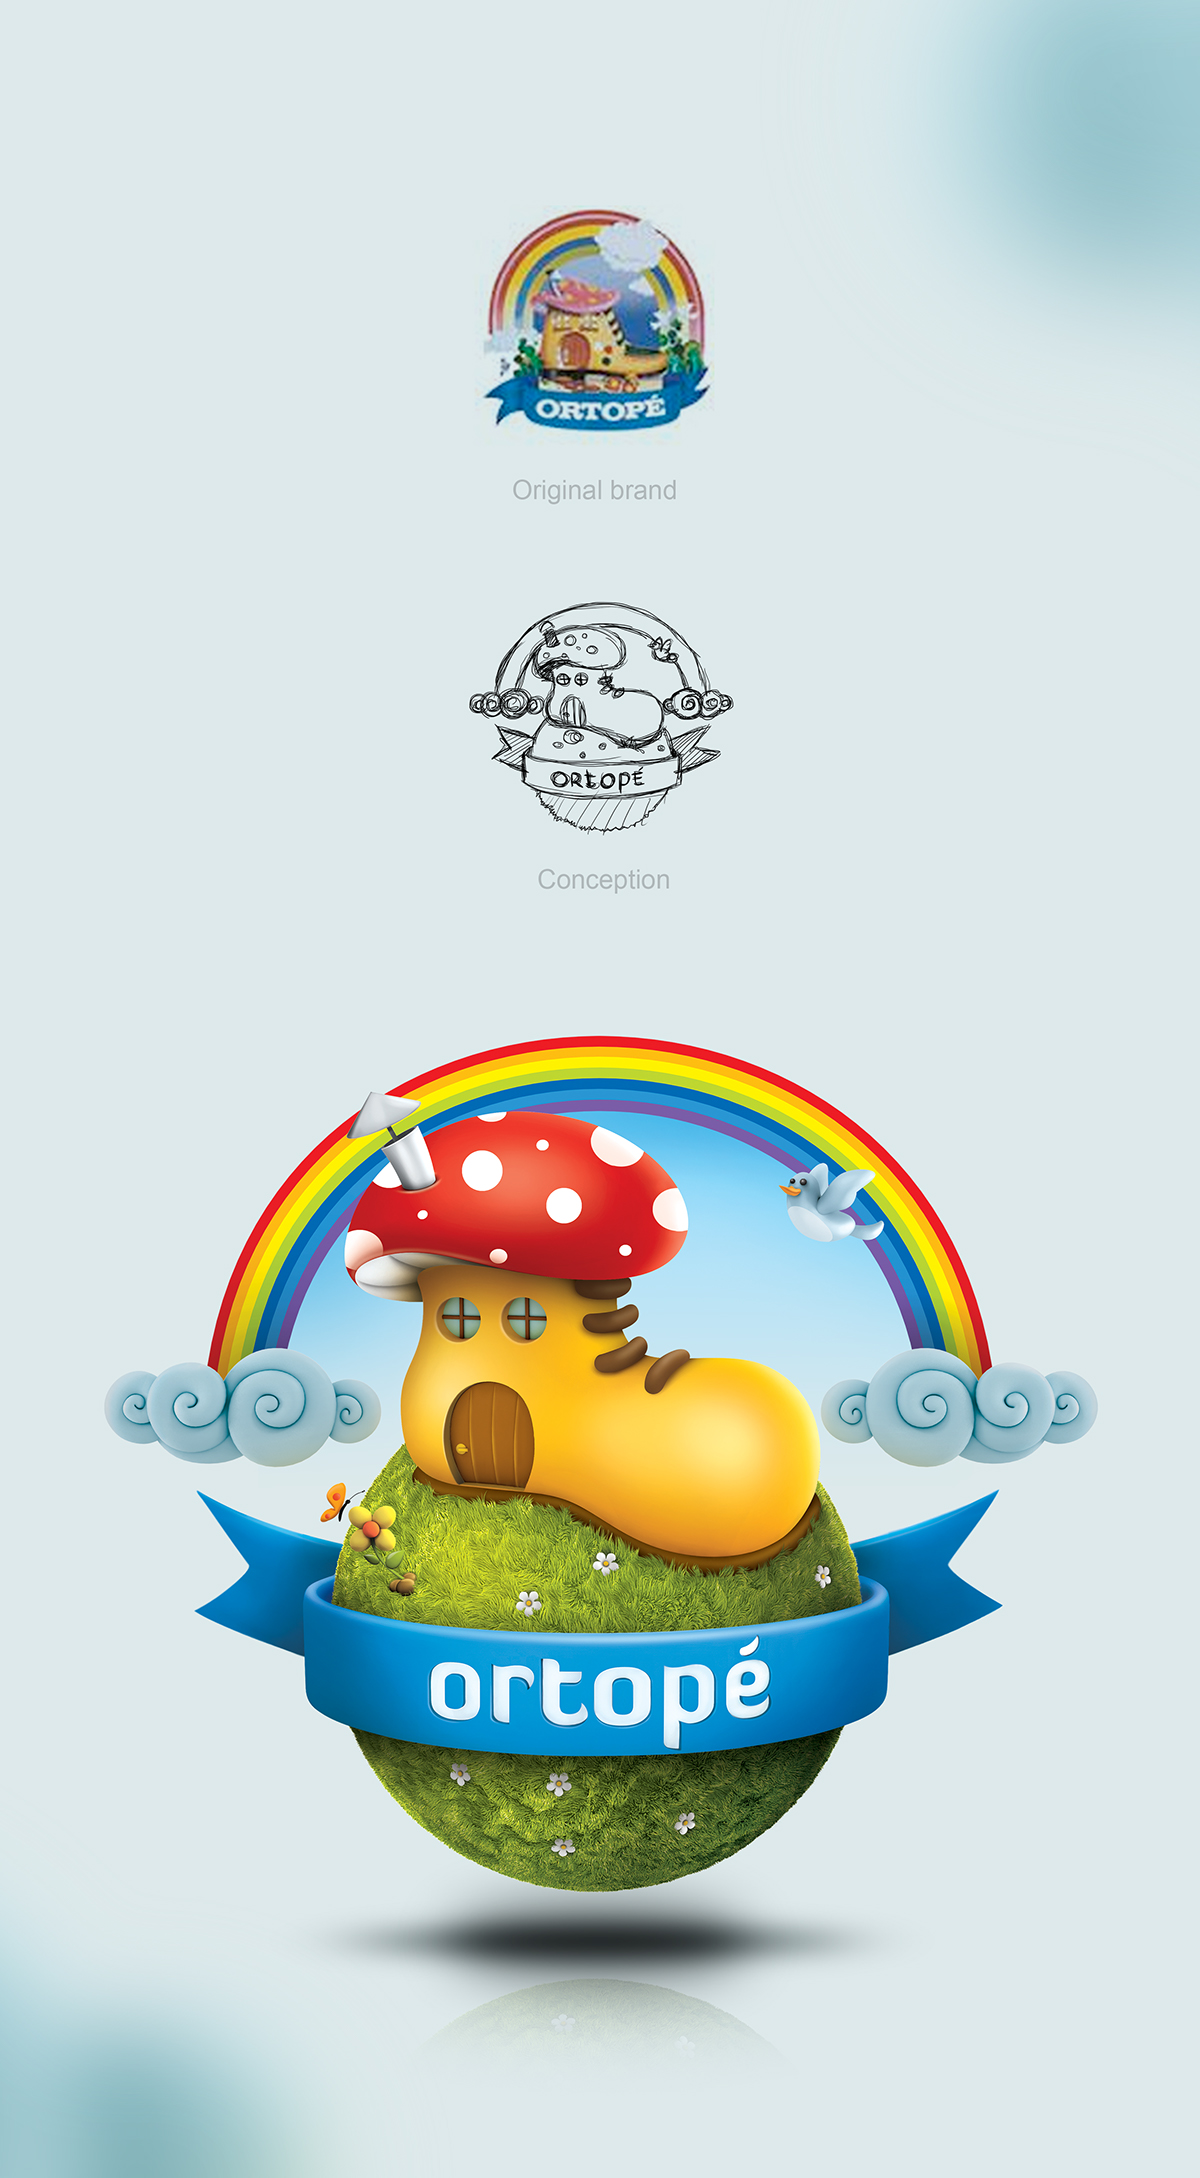 Ortopé logo Logotipo 3D gilneisilva gilnei redesign Criaçao do novo Novo logo ortopé